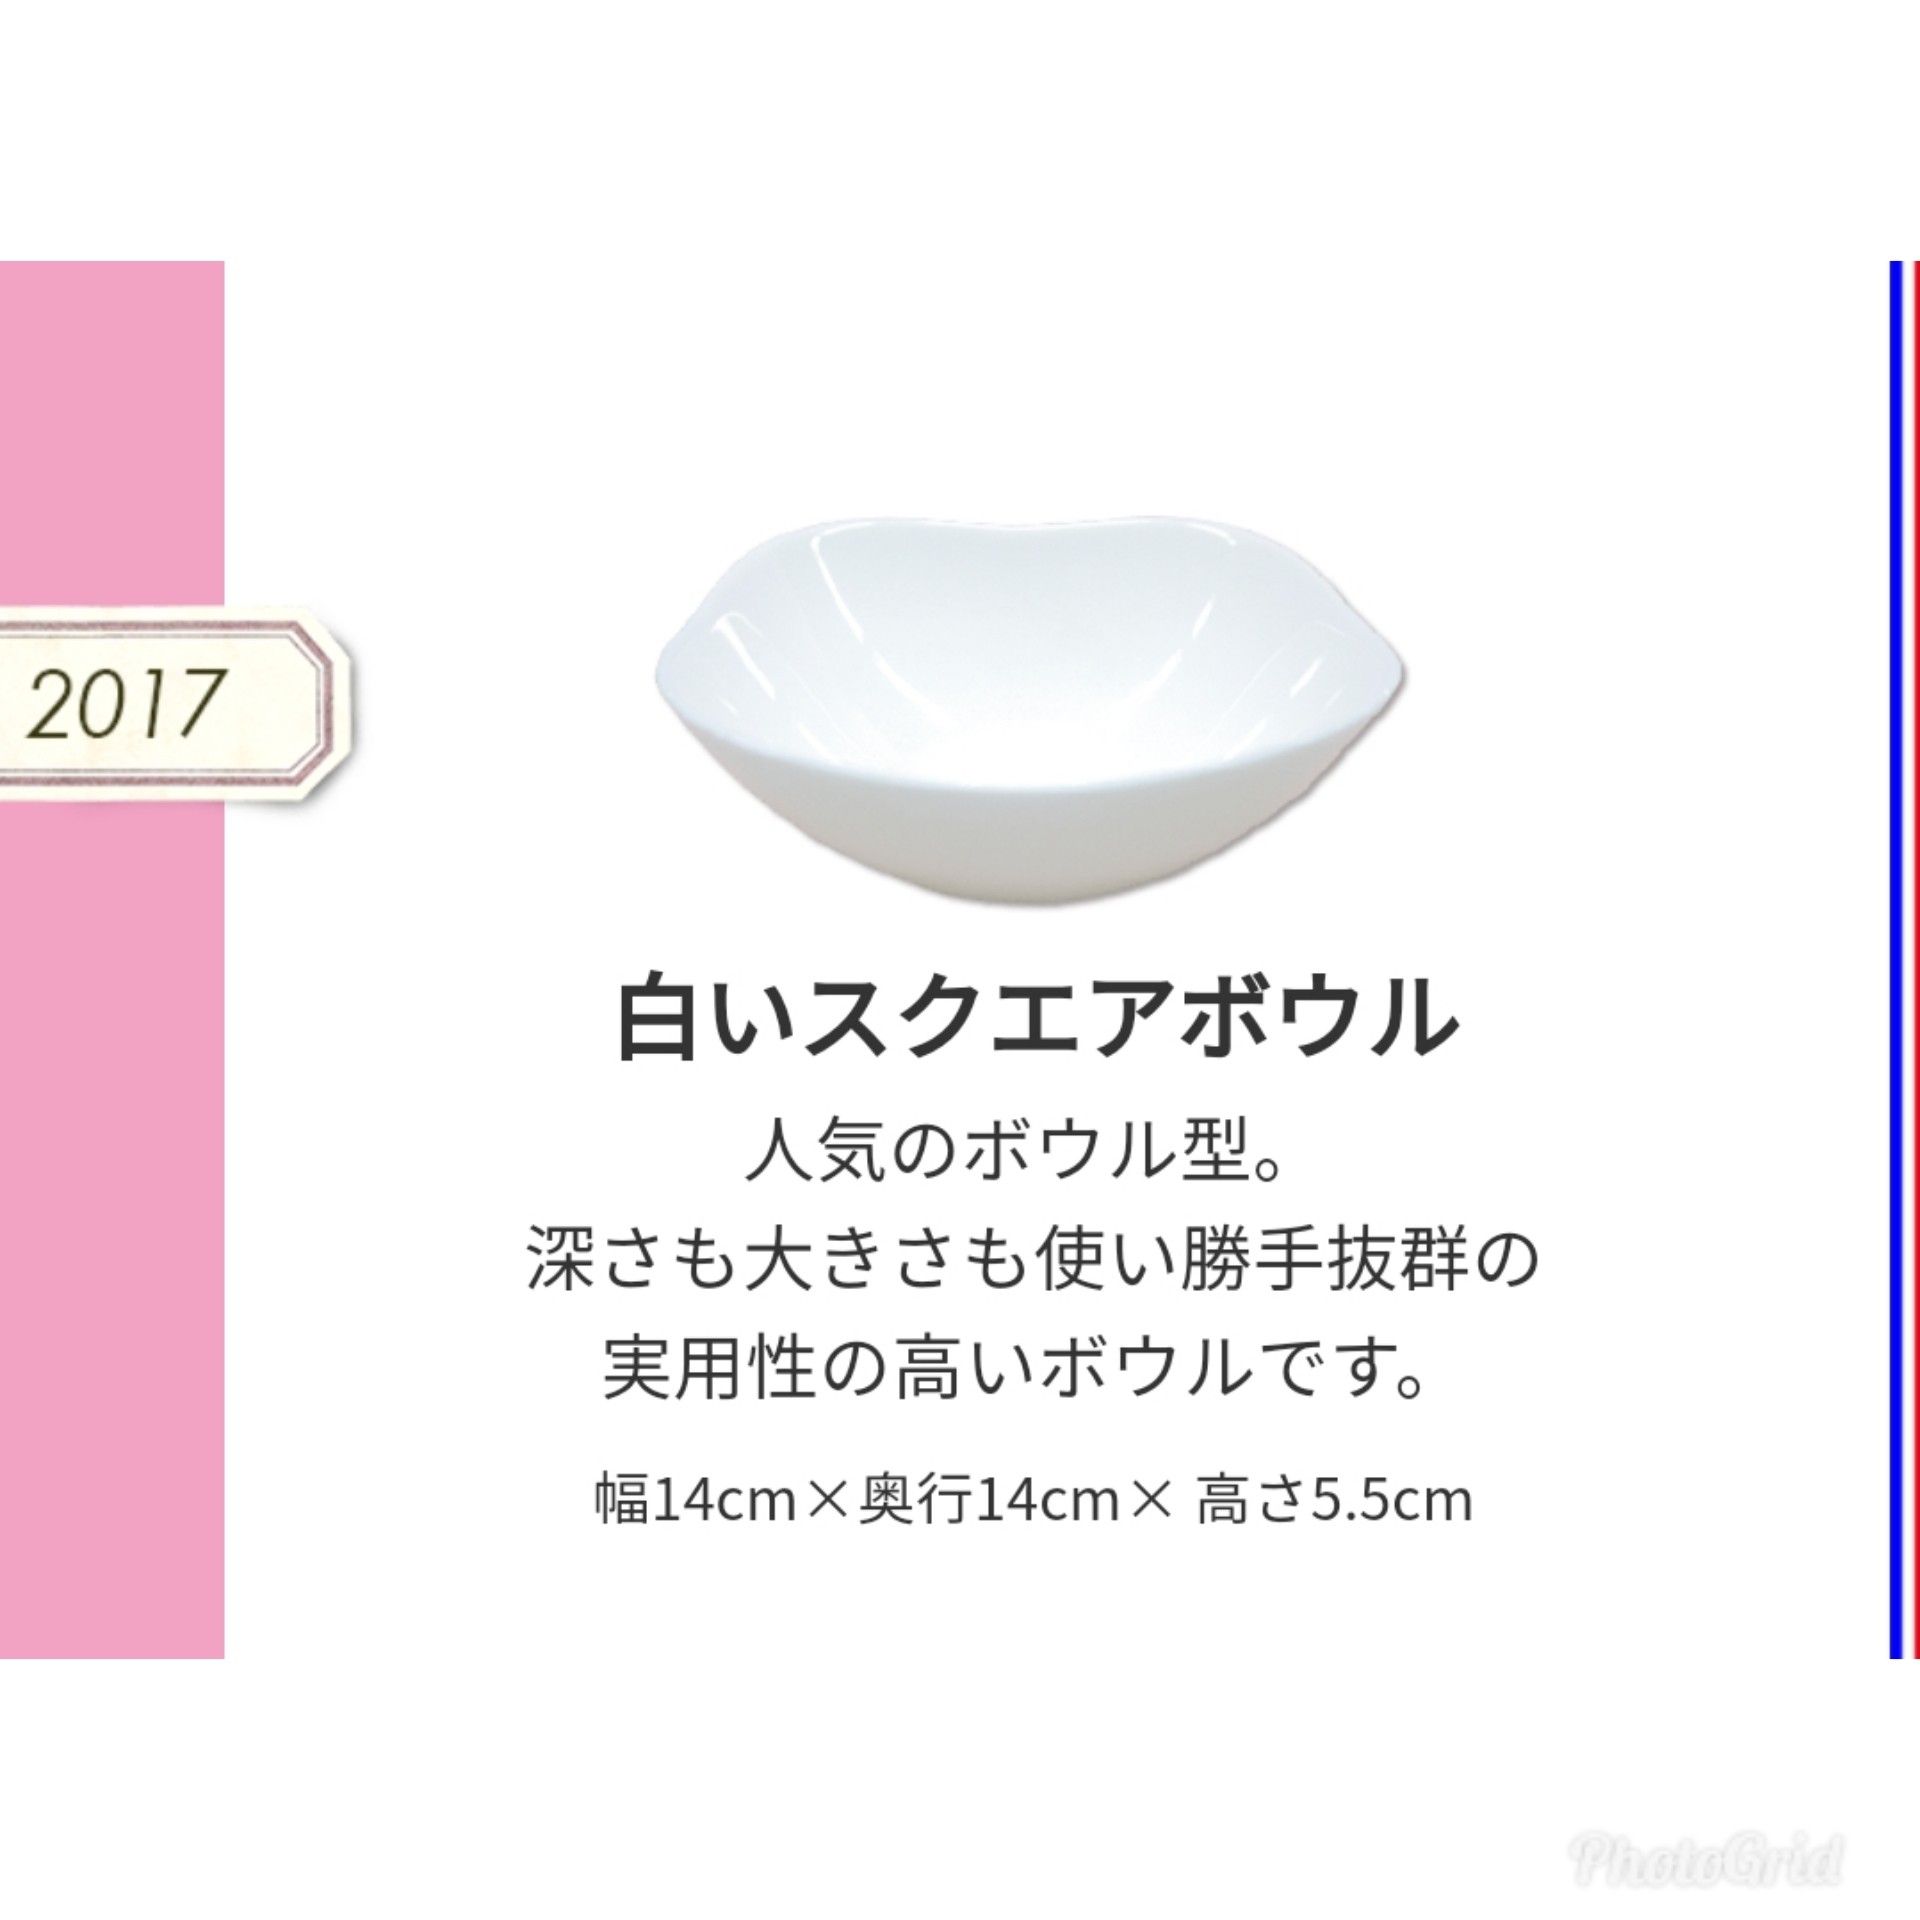 これが1番のお気に入り ヤマザキ春のパン祭りの白いお皿 白いスクエアボウル 17 無印良品に似合うお部屋にリフォームした話 手ぬぐい お気に入り雑貨 の雑記ブログ 楽天ブログ